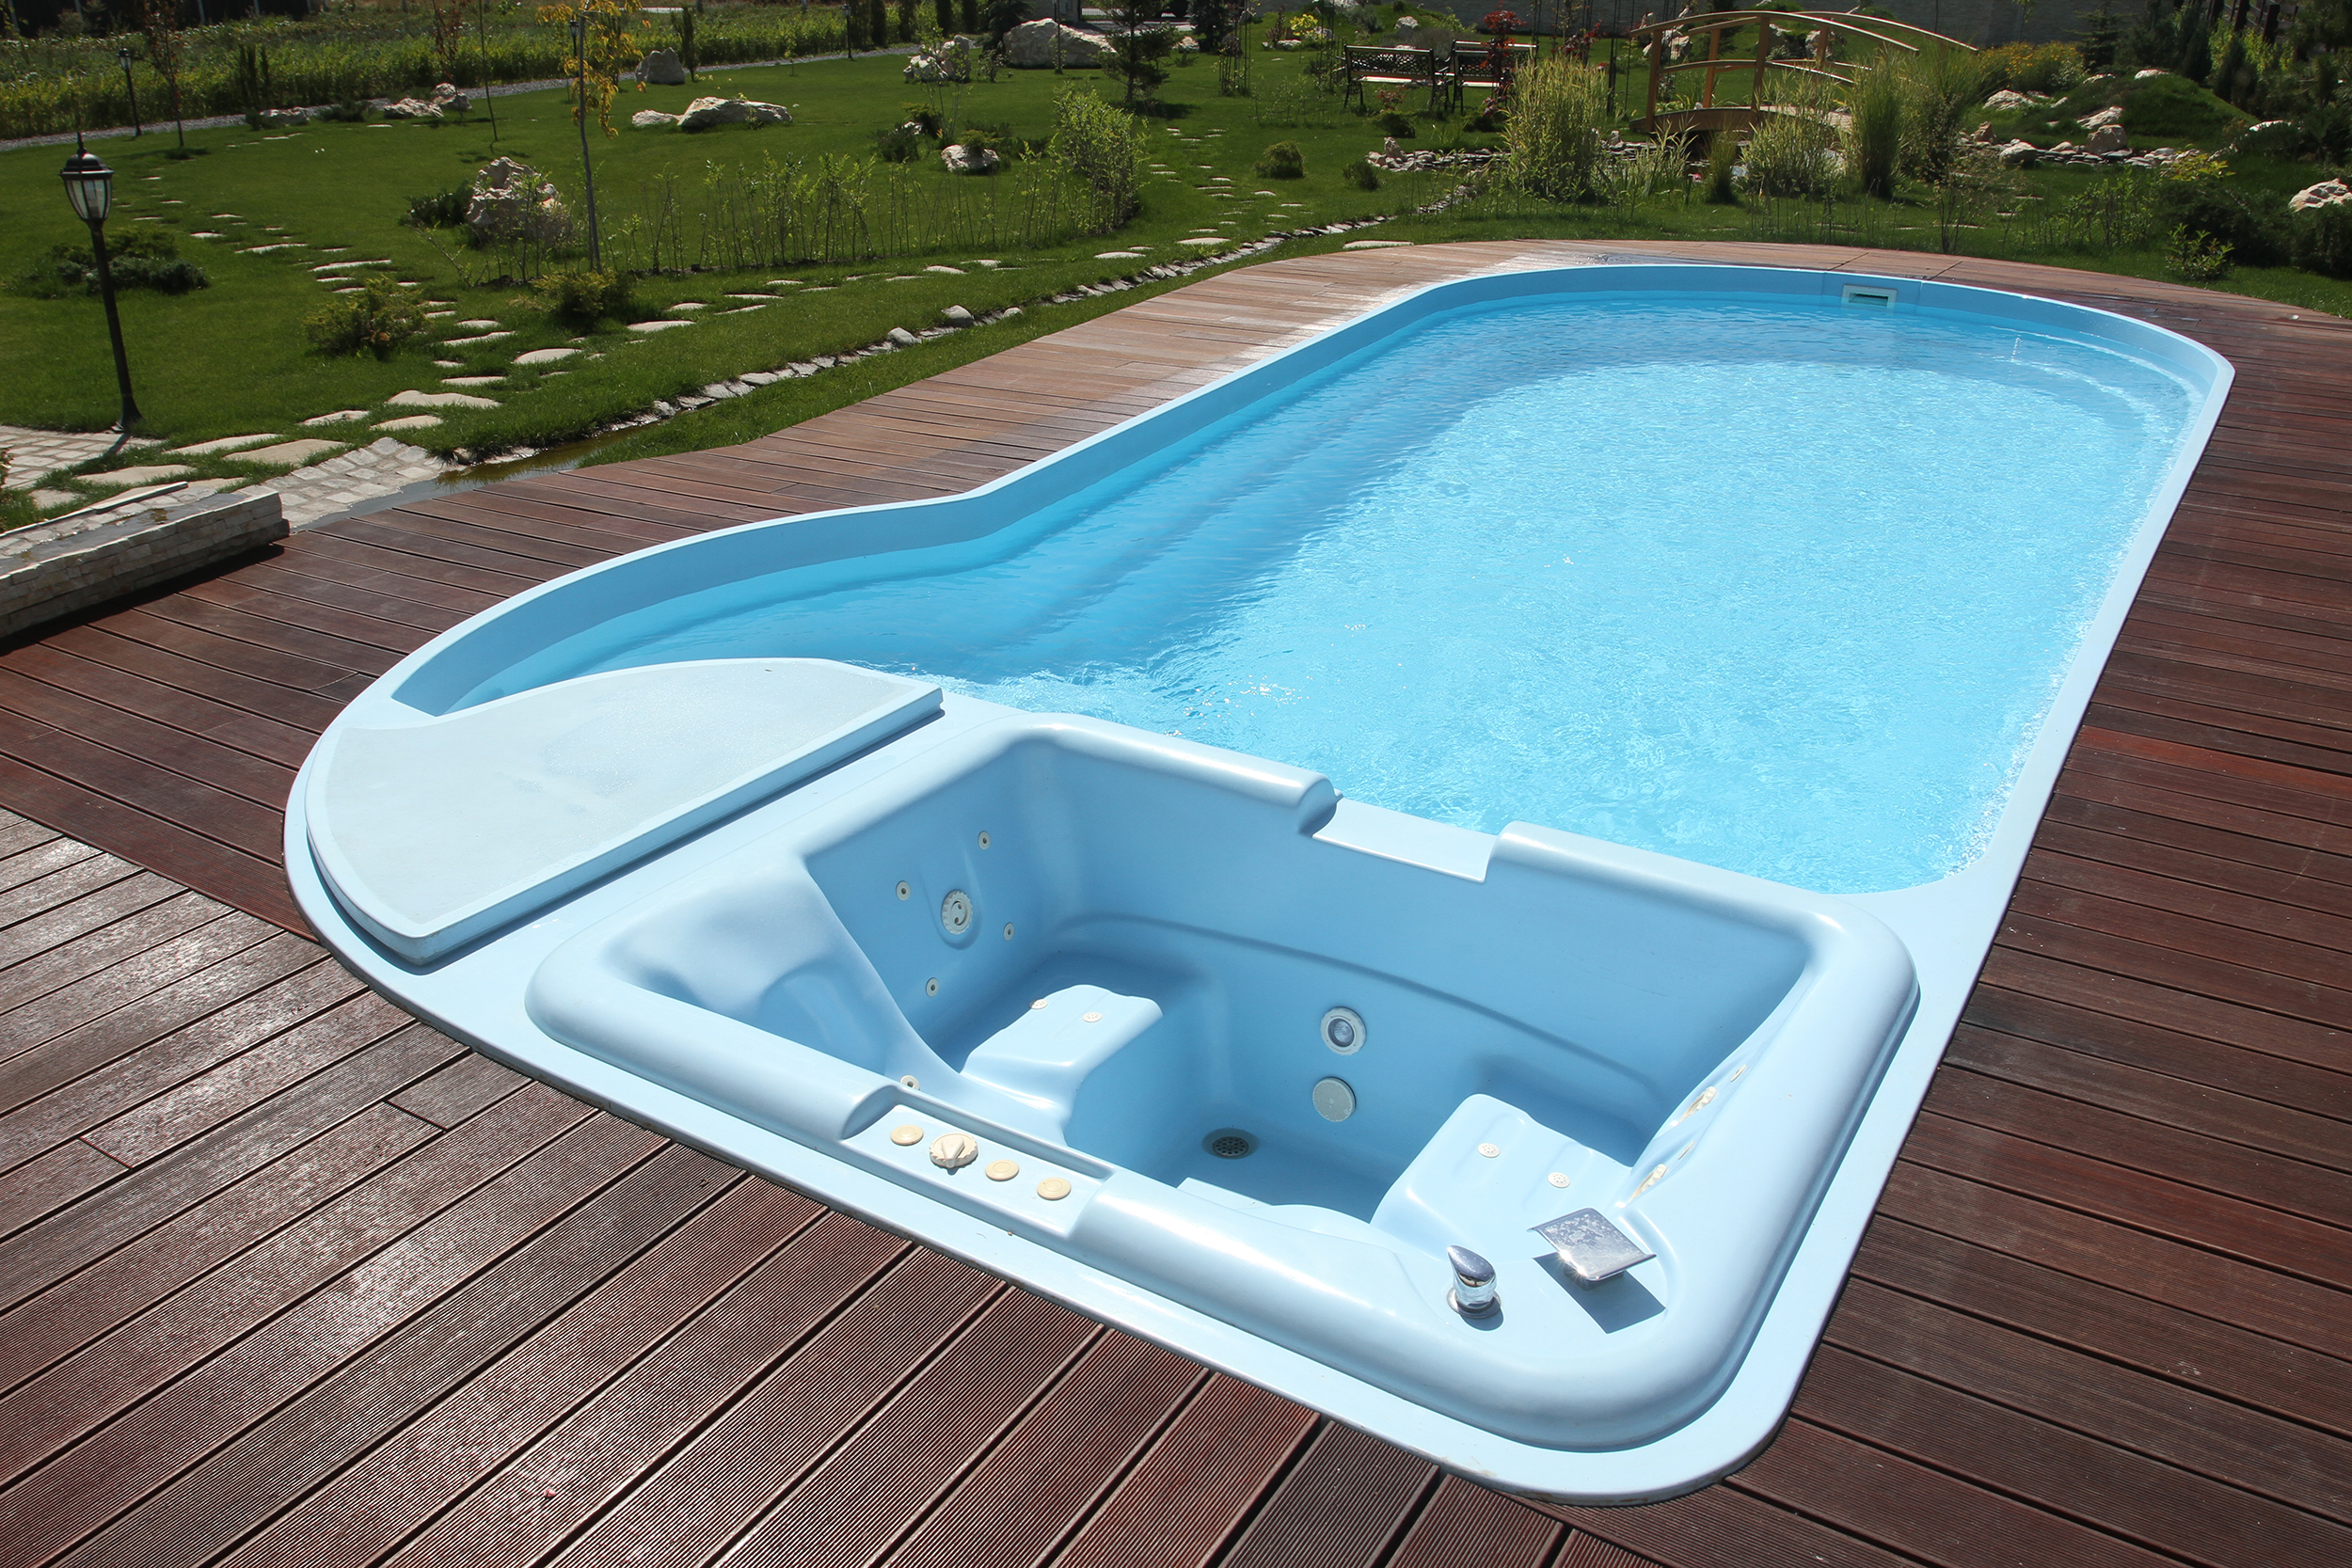 Piscina Ibiza - Fibrex, garantia calitatii piscinei tale!